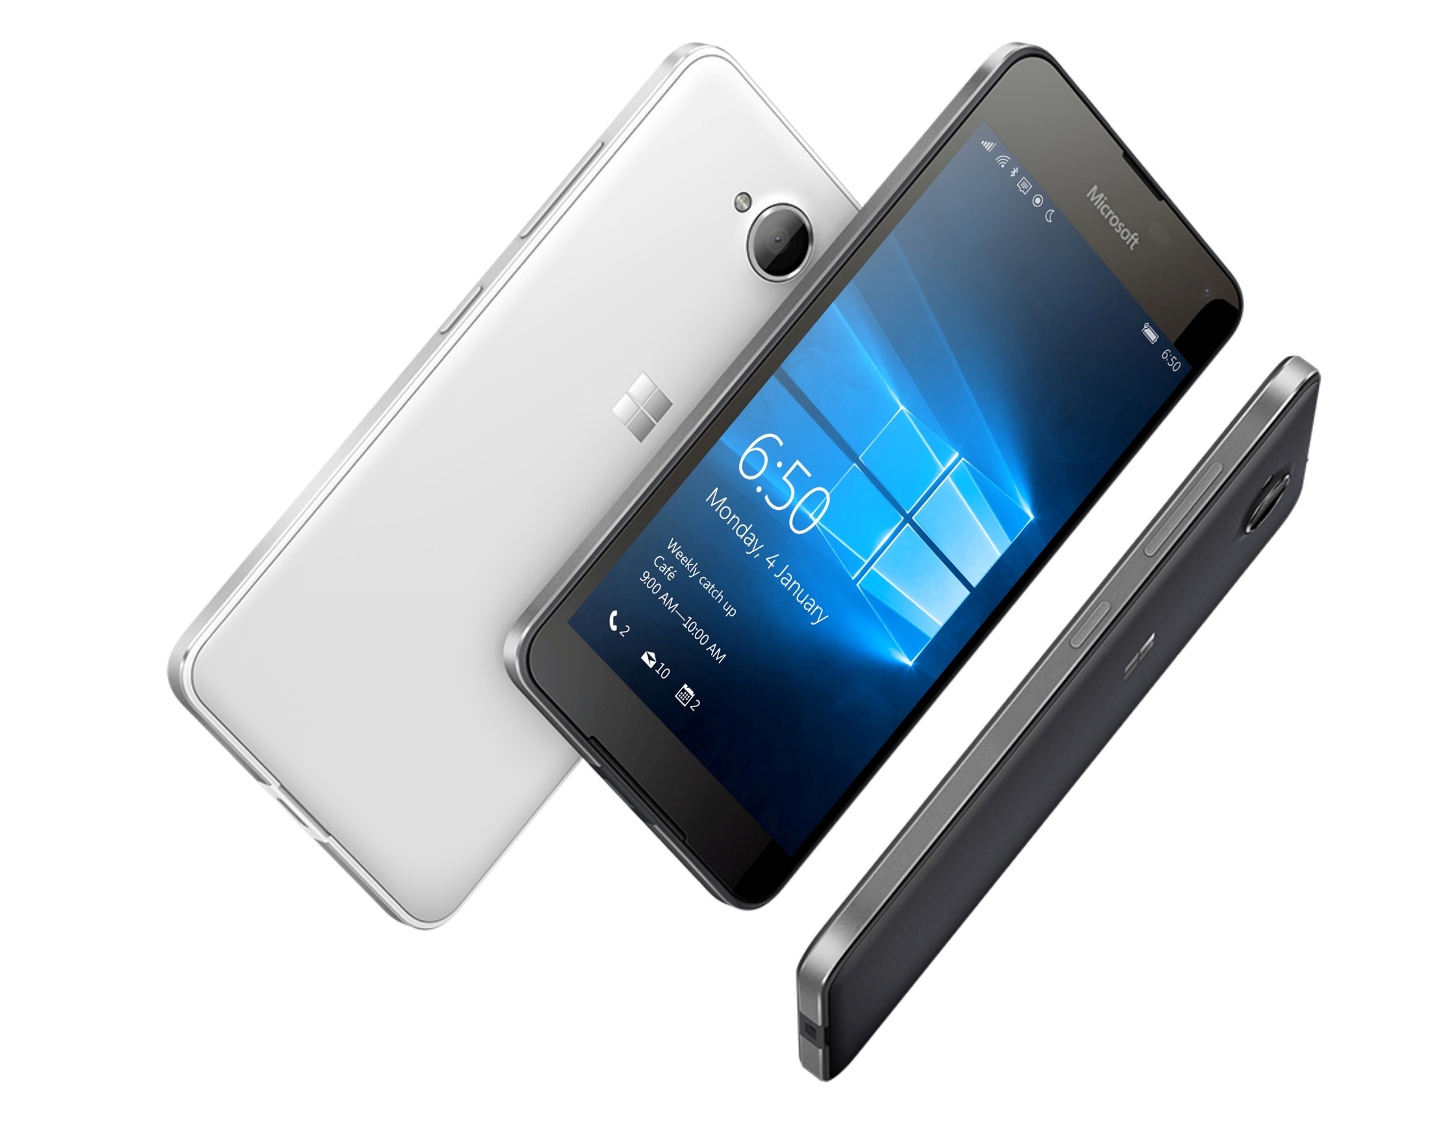 تماشا کنید: عرضه رسمی Lumia 650 در بازار اروپا / هوشمند 200 دلاری زیبای ویندوز 10